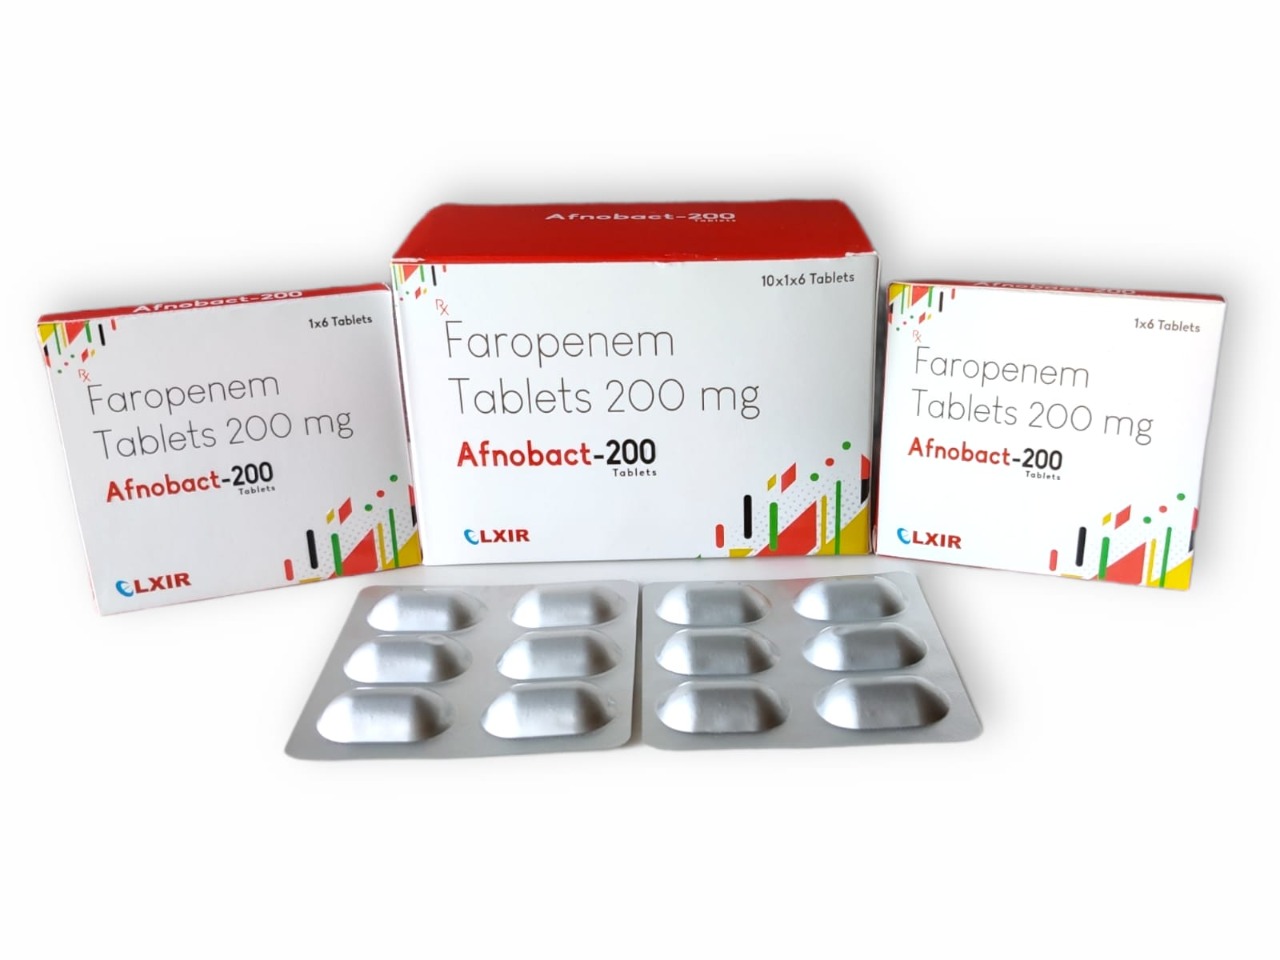 Faropenem Tablets - AFNOBACT-200